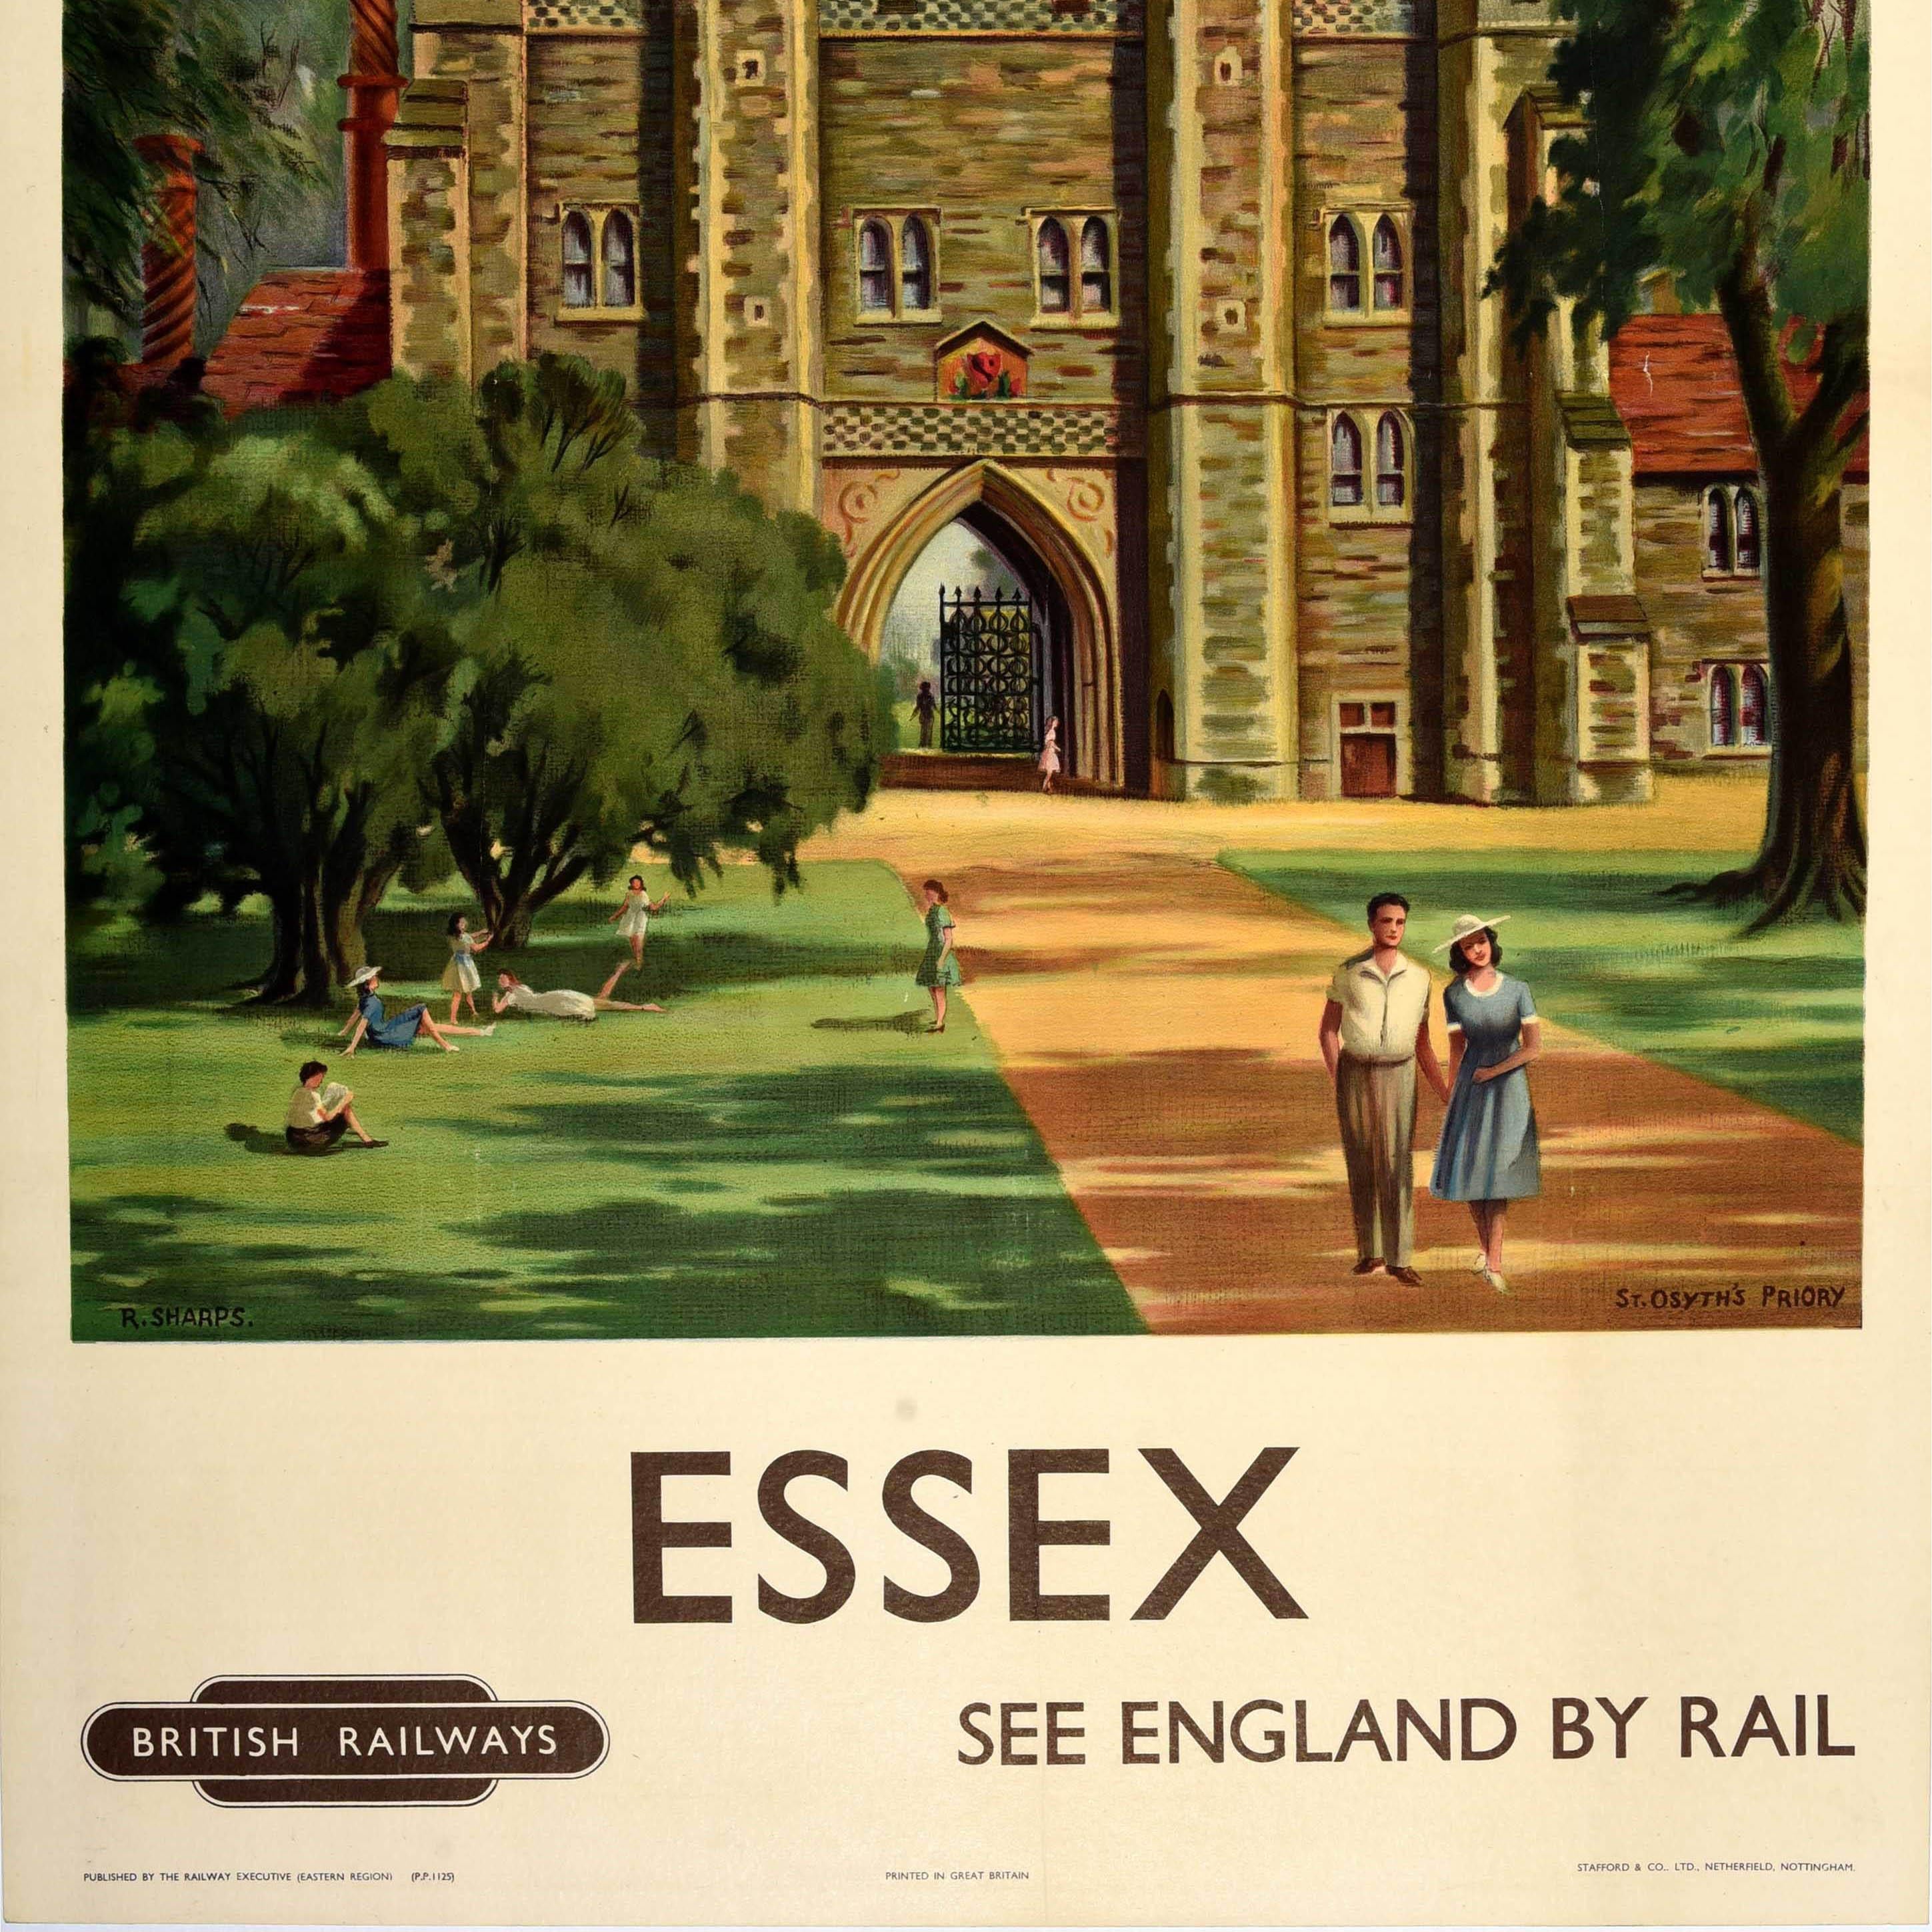 Original Vintage British Railways Reiseplakat - Essex See England by Rail - mit einem großen Bild von St. Osyth's Priory, das eine Dame und einen Mann zeigt, die einen Weg entlang auf den Betrachter zugehen, mit Menschen, die sich ausruhen und